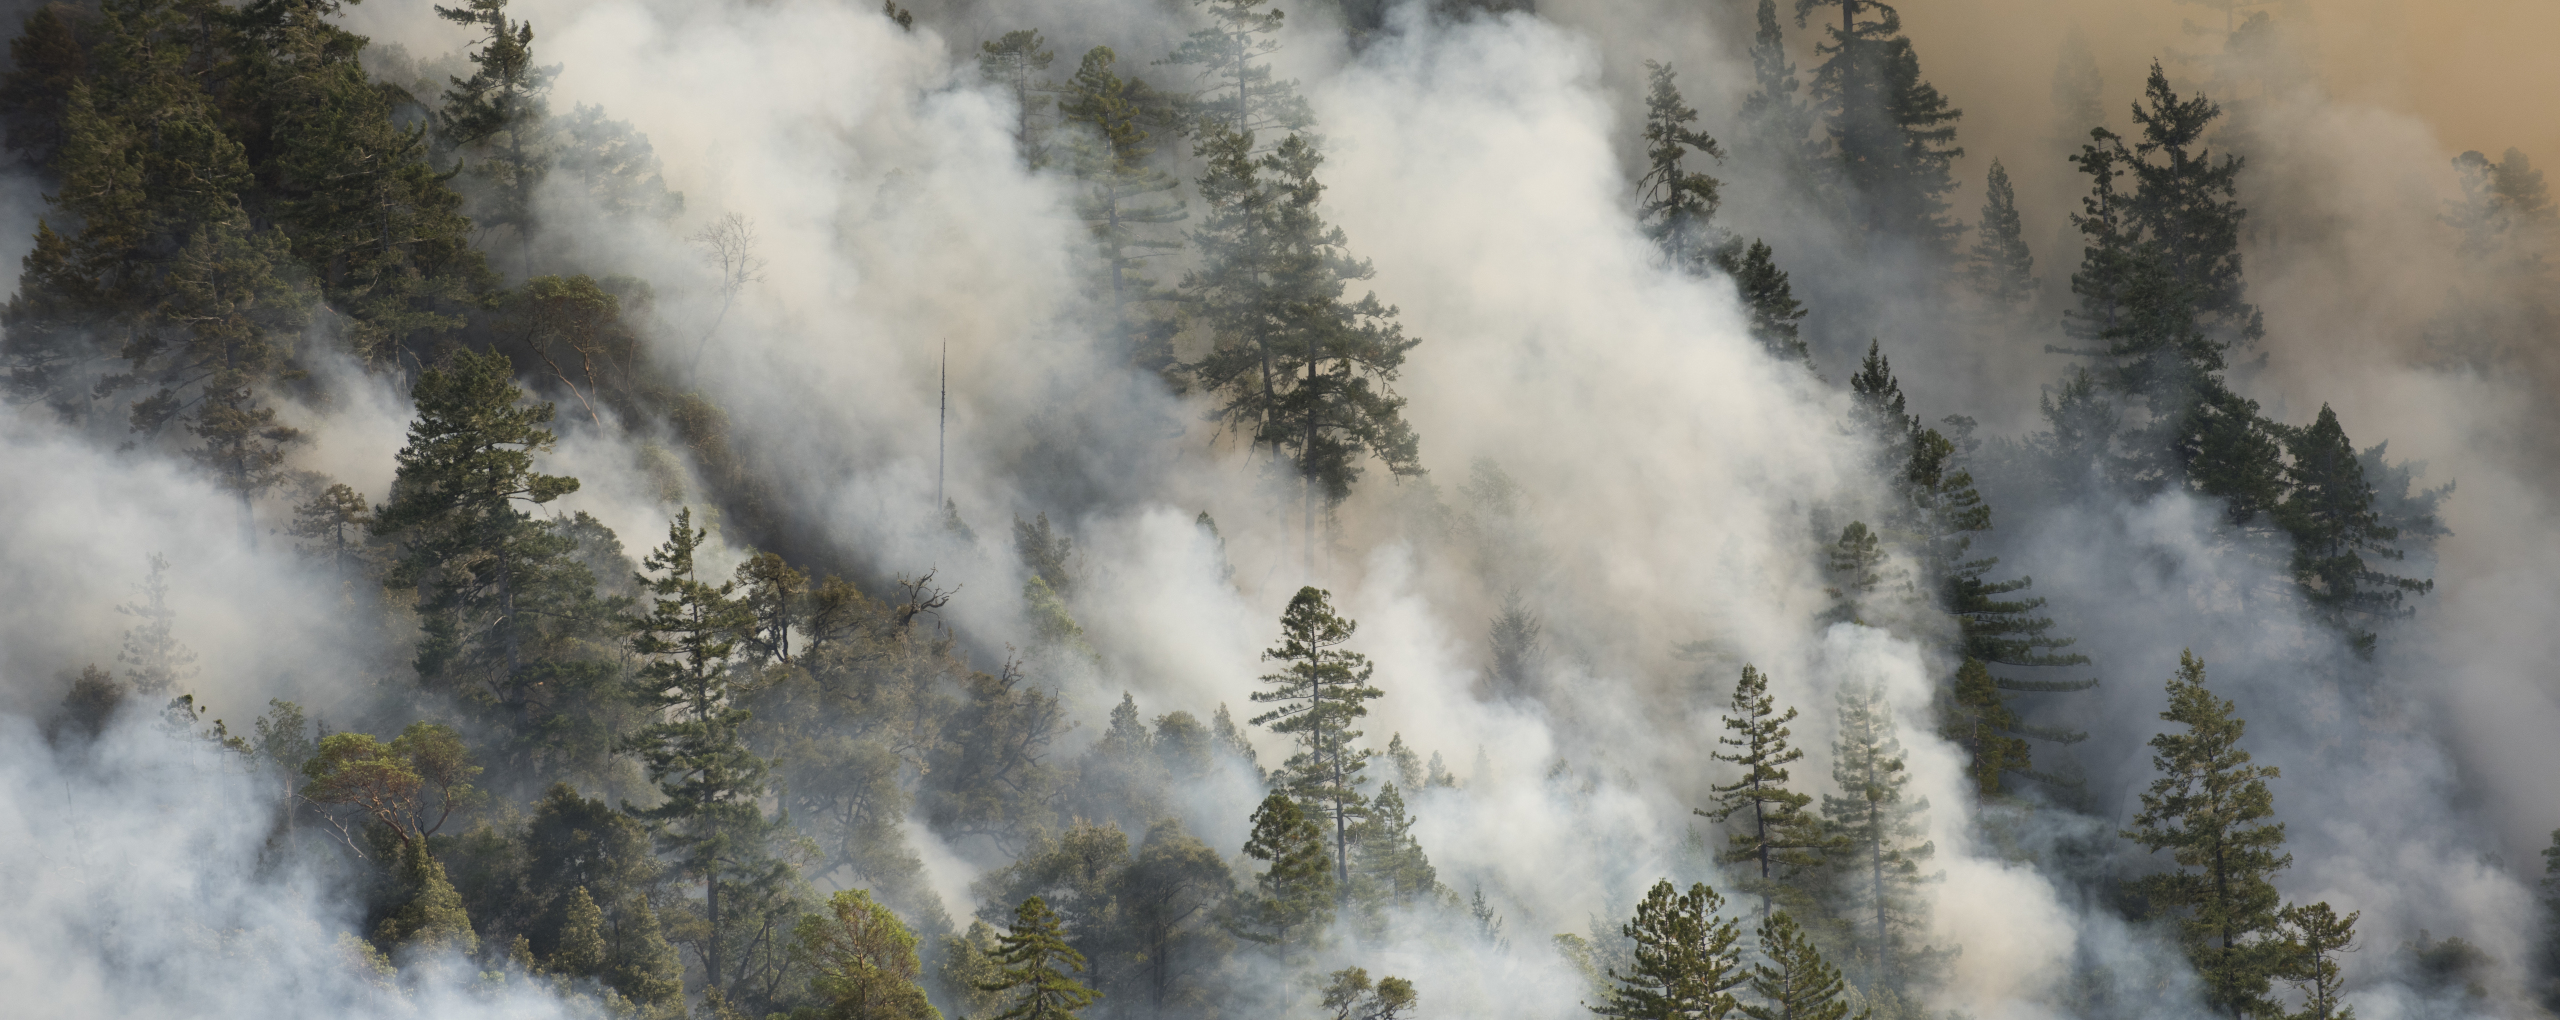 Restauración de incendios forestales en Mendocino, CA